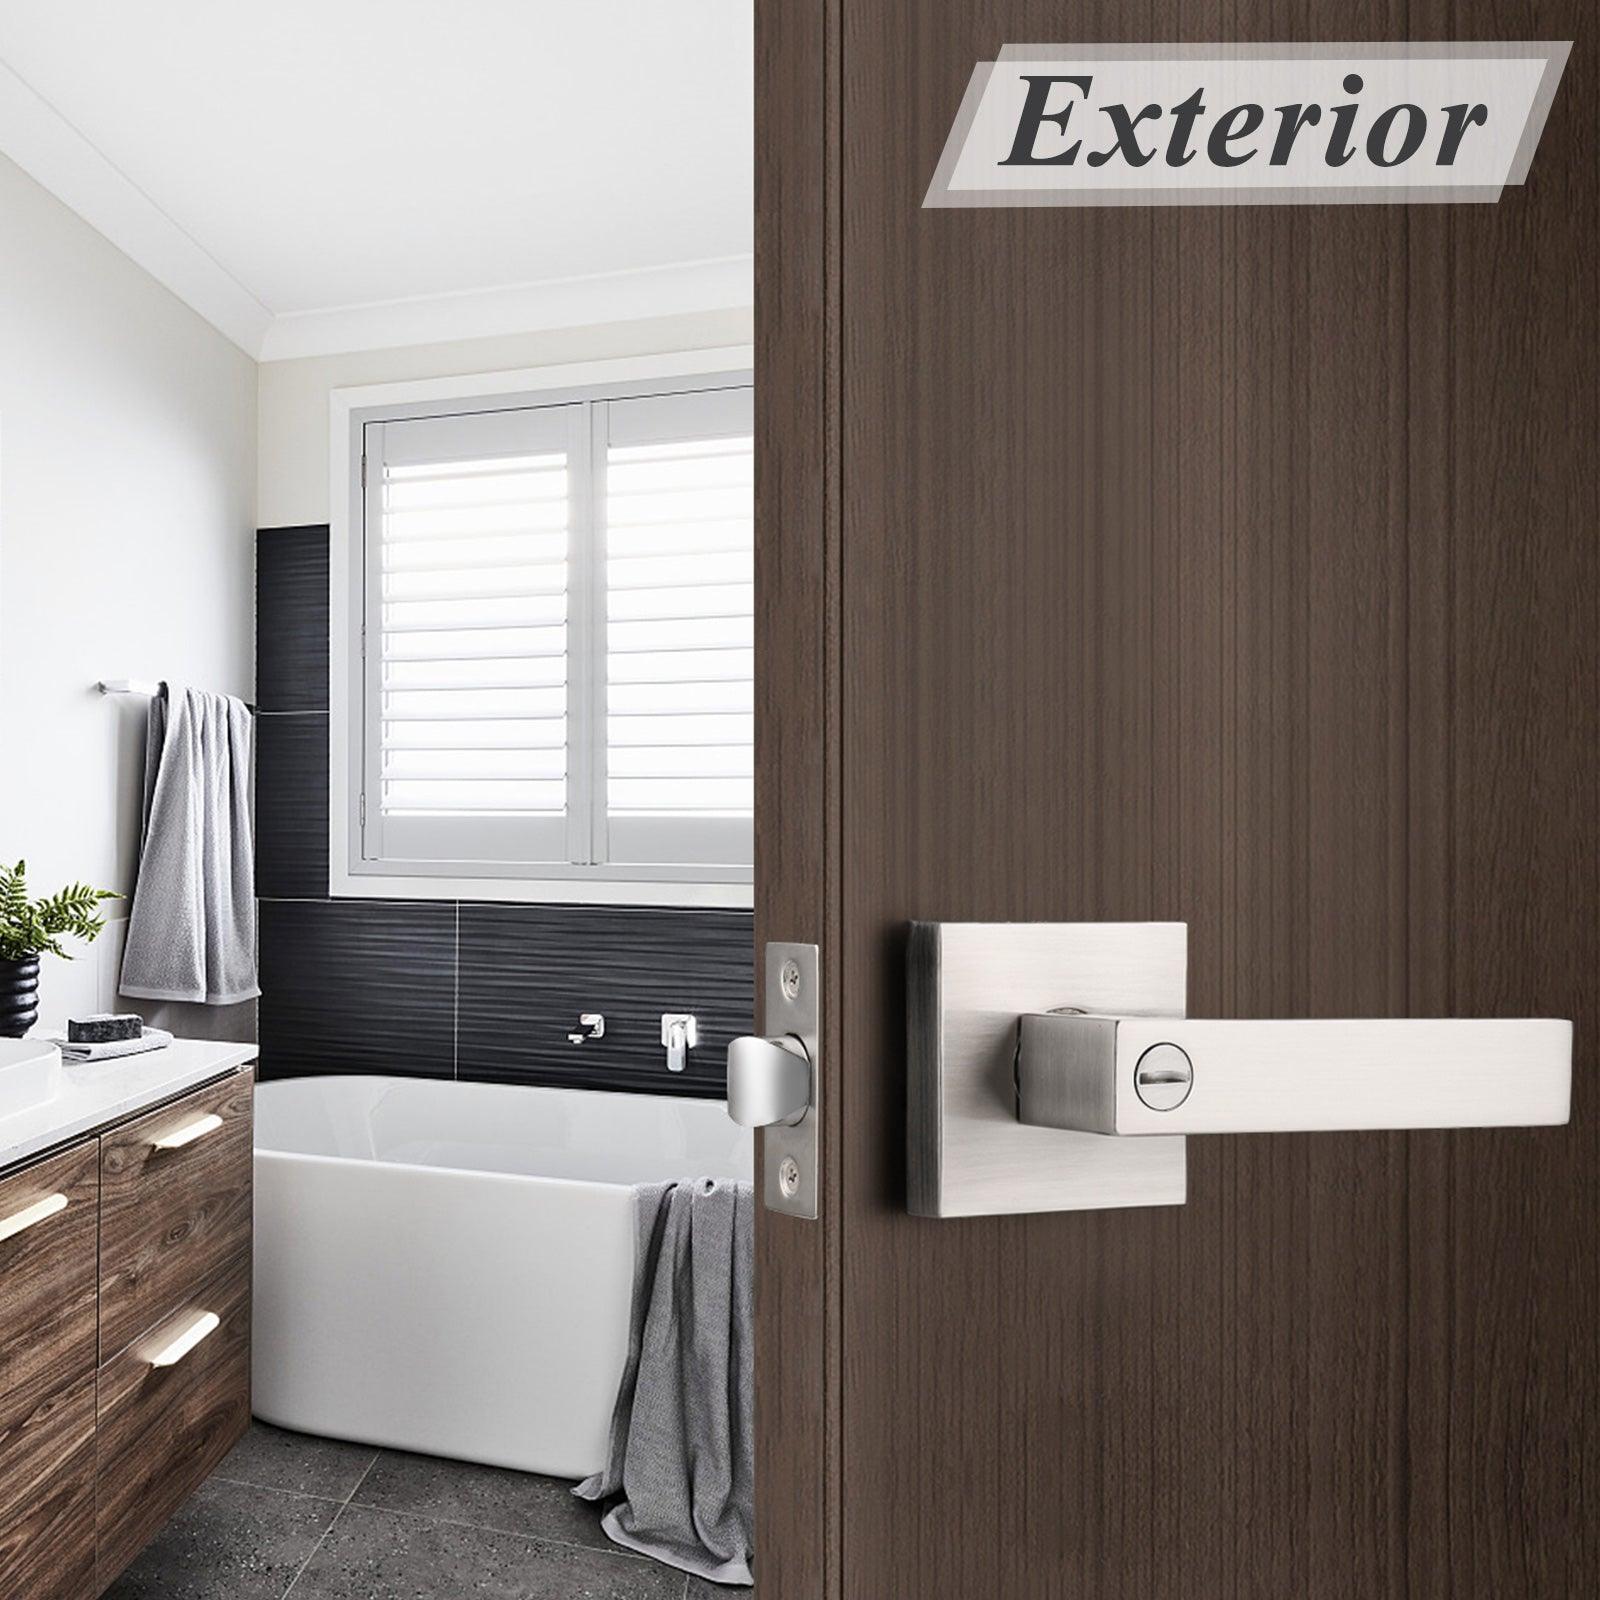 Heavy Duty Door Levers Satin Nickel Finish Privacy Door Handle Locks for Bedroom Bathroom DL01SNBK